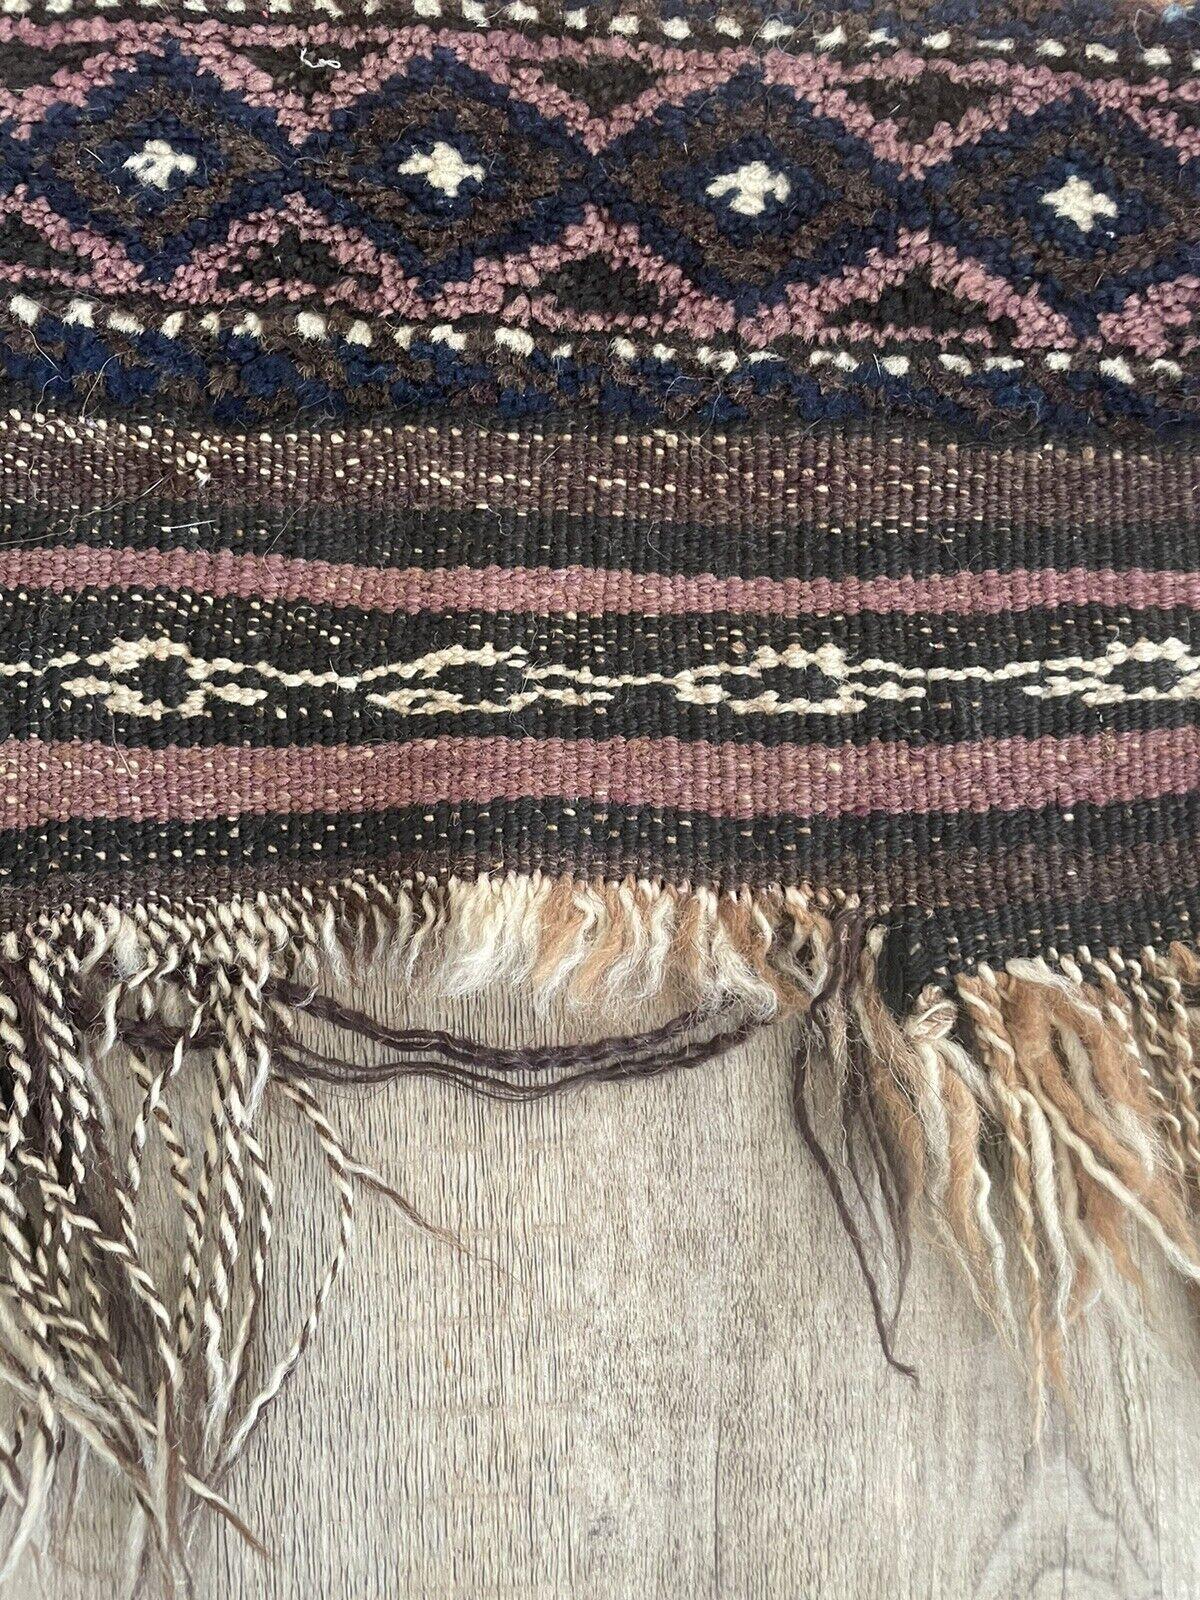 Ancien tapis de collection afghan Baluch, fait à la main, datant des années 1920 :

Dimensions :
Ce tapis rectangulaire mesure environ 2,3 pieds (72 cm) de largeur et 5 pieds (155 cm) de hauteur.
Sa taille compacte lui permet de s'adapter à divers